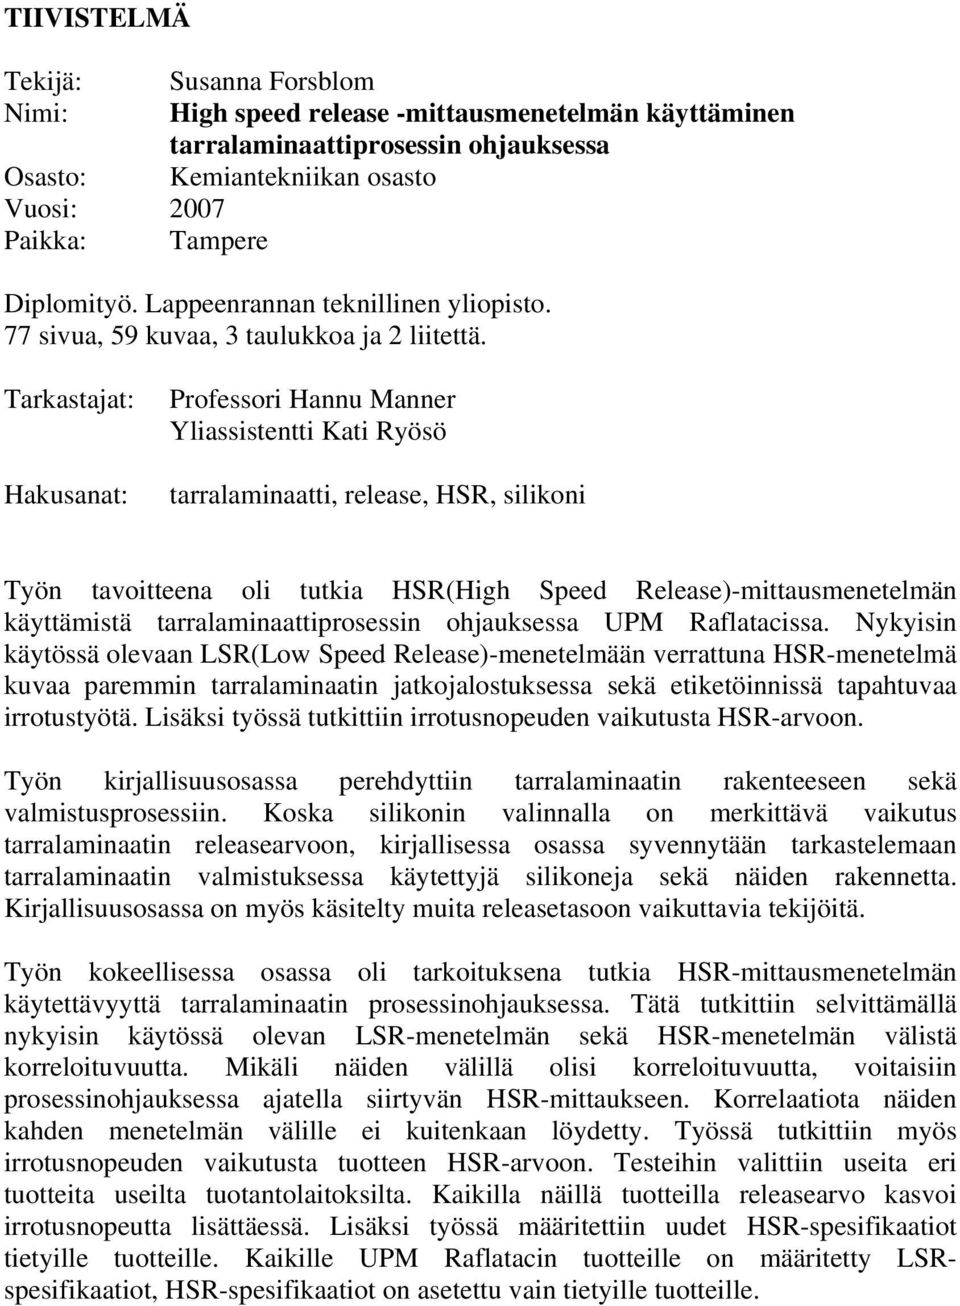 Tarkastajat: Hakusanat: Professori Hannu Manner Yliassistentti Kati Ryösö tarralaminaatti, release, HSR, silikoni Työn tavoitteena oli tutkia HSR(High Speed Release)-mittausmenetelmän käyttämistä